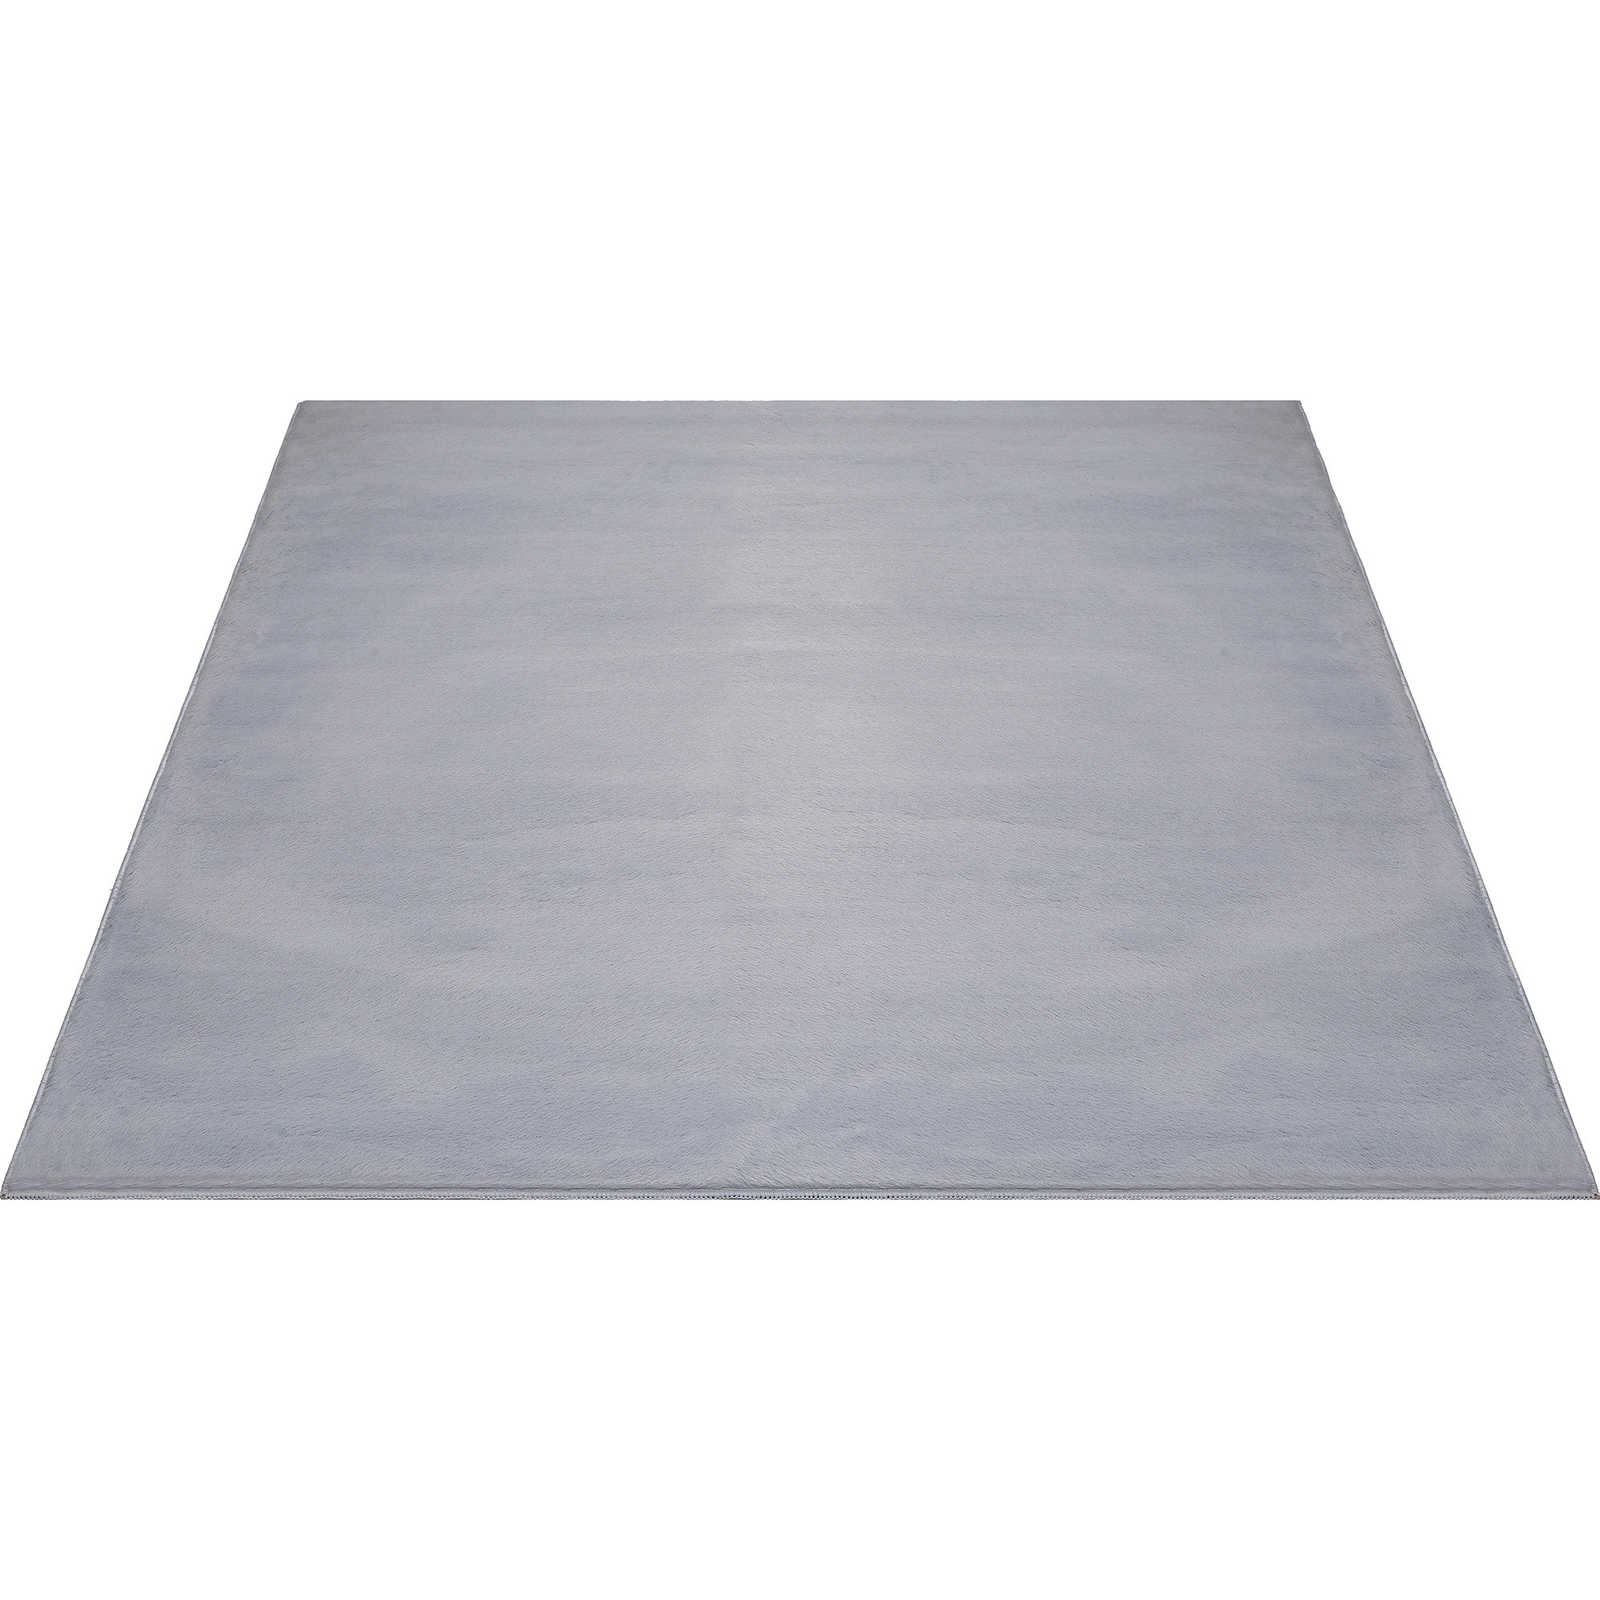 Angenehmer Hochflor Teppich in sanften Grau – 340 x 240 cm
